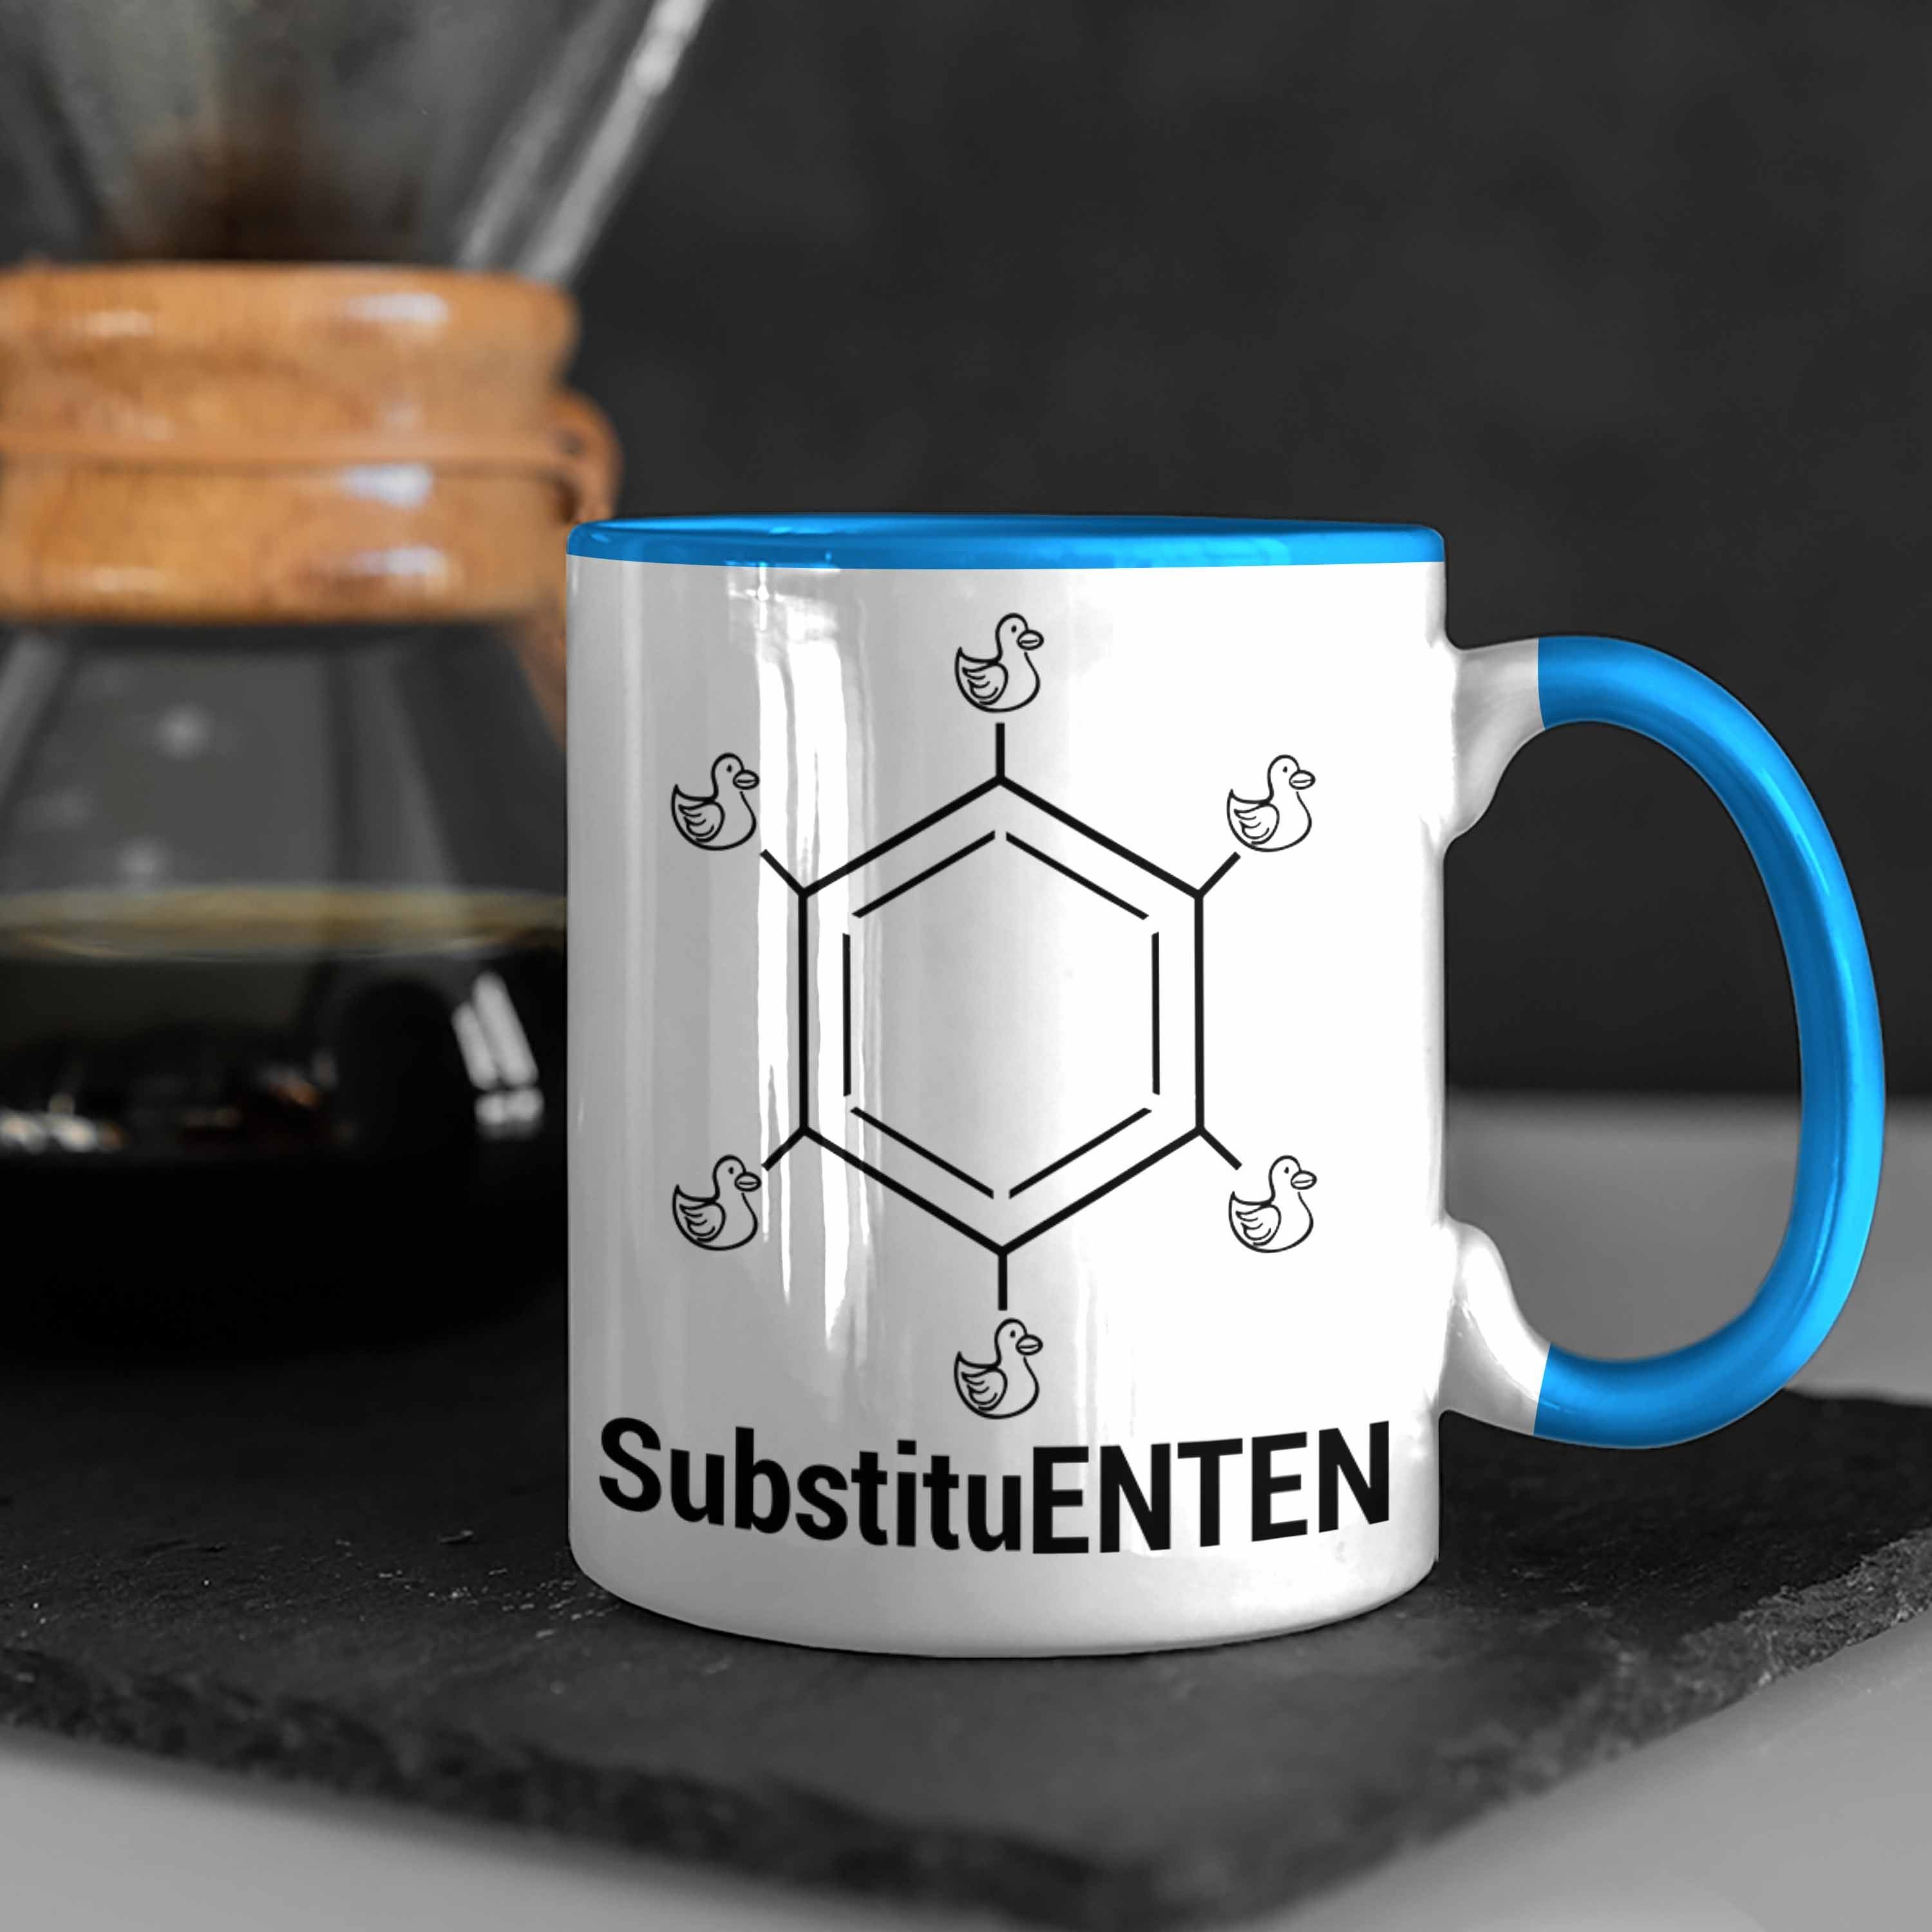 Trendation Tasse Chemie Tasse SubstituENTEN Ente Witz Kaffee Chemiker Chemie Organische Blau